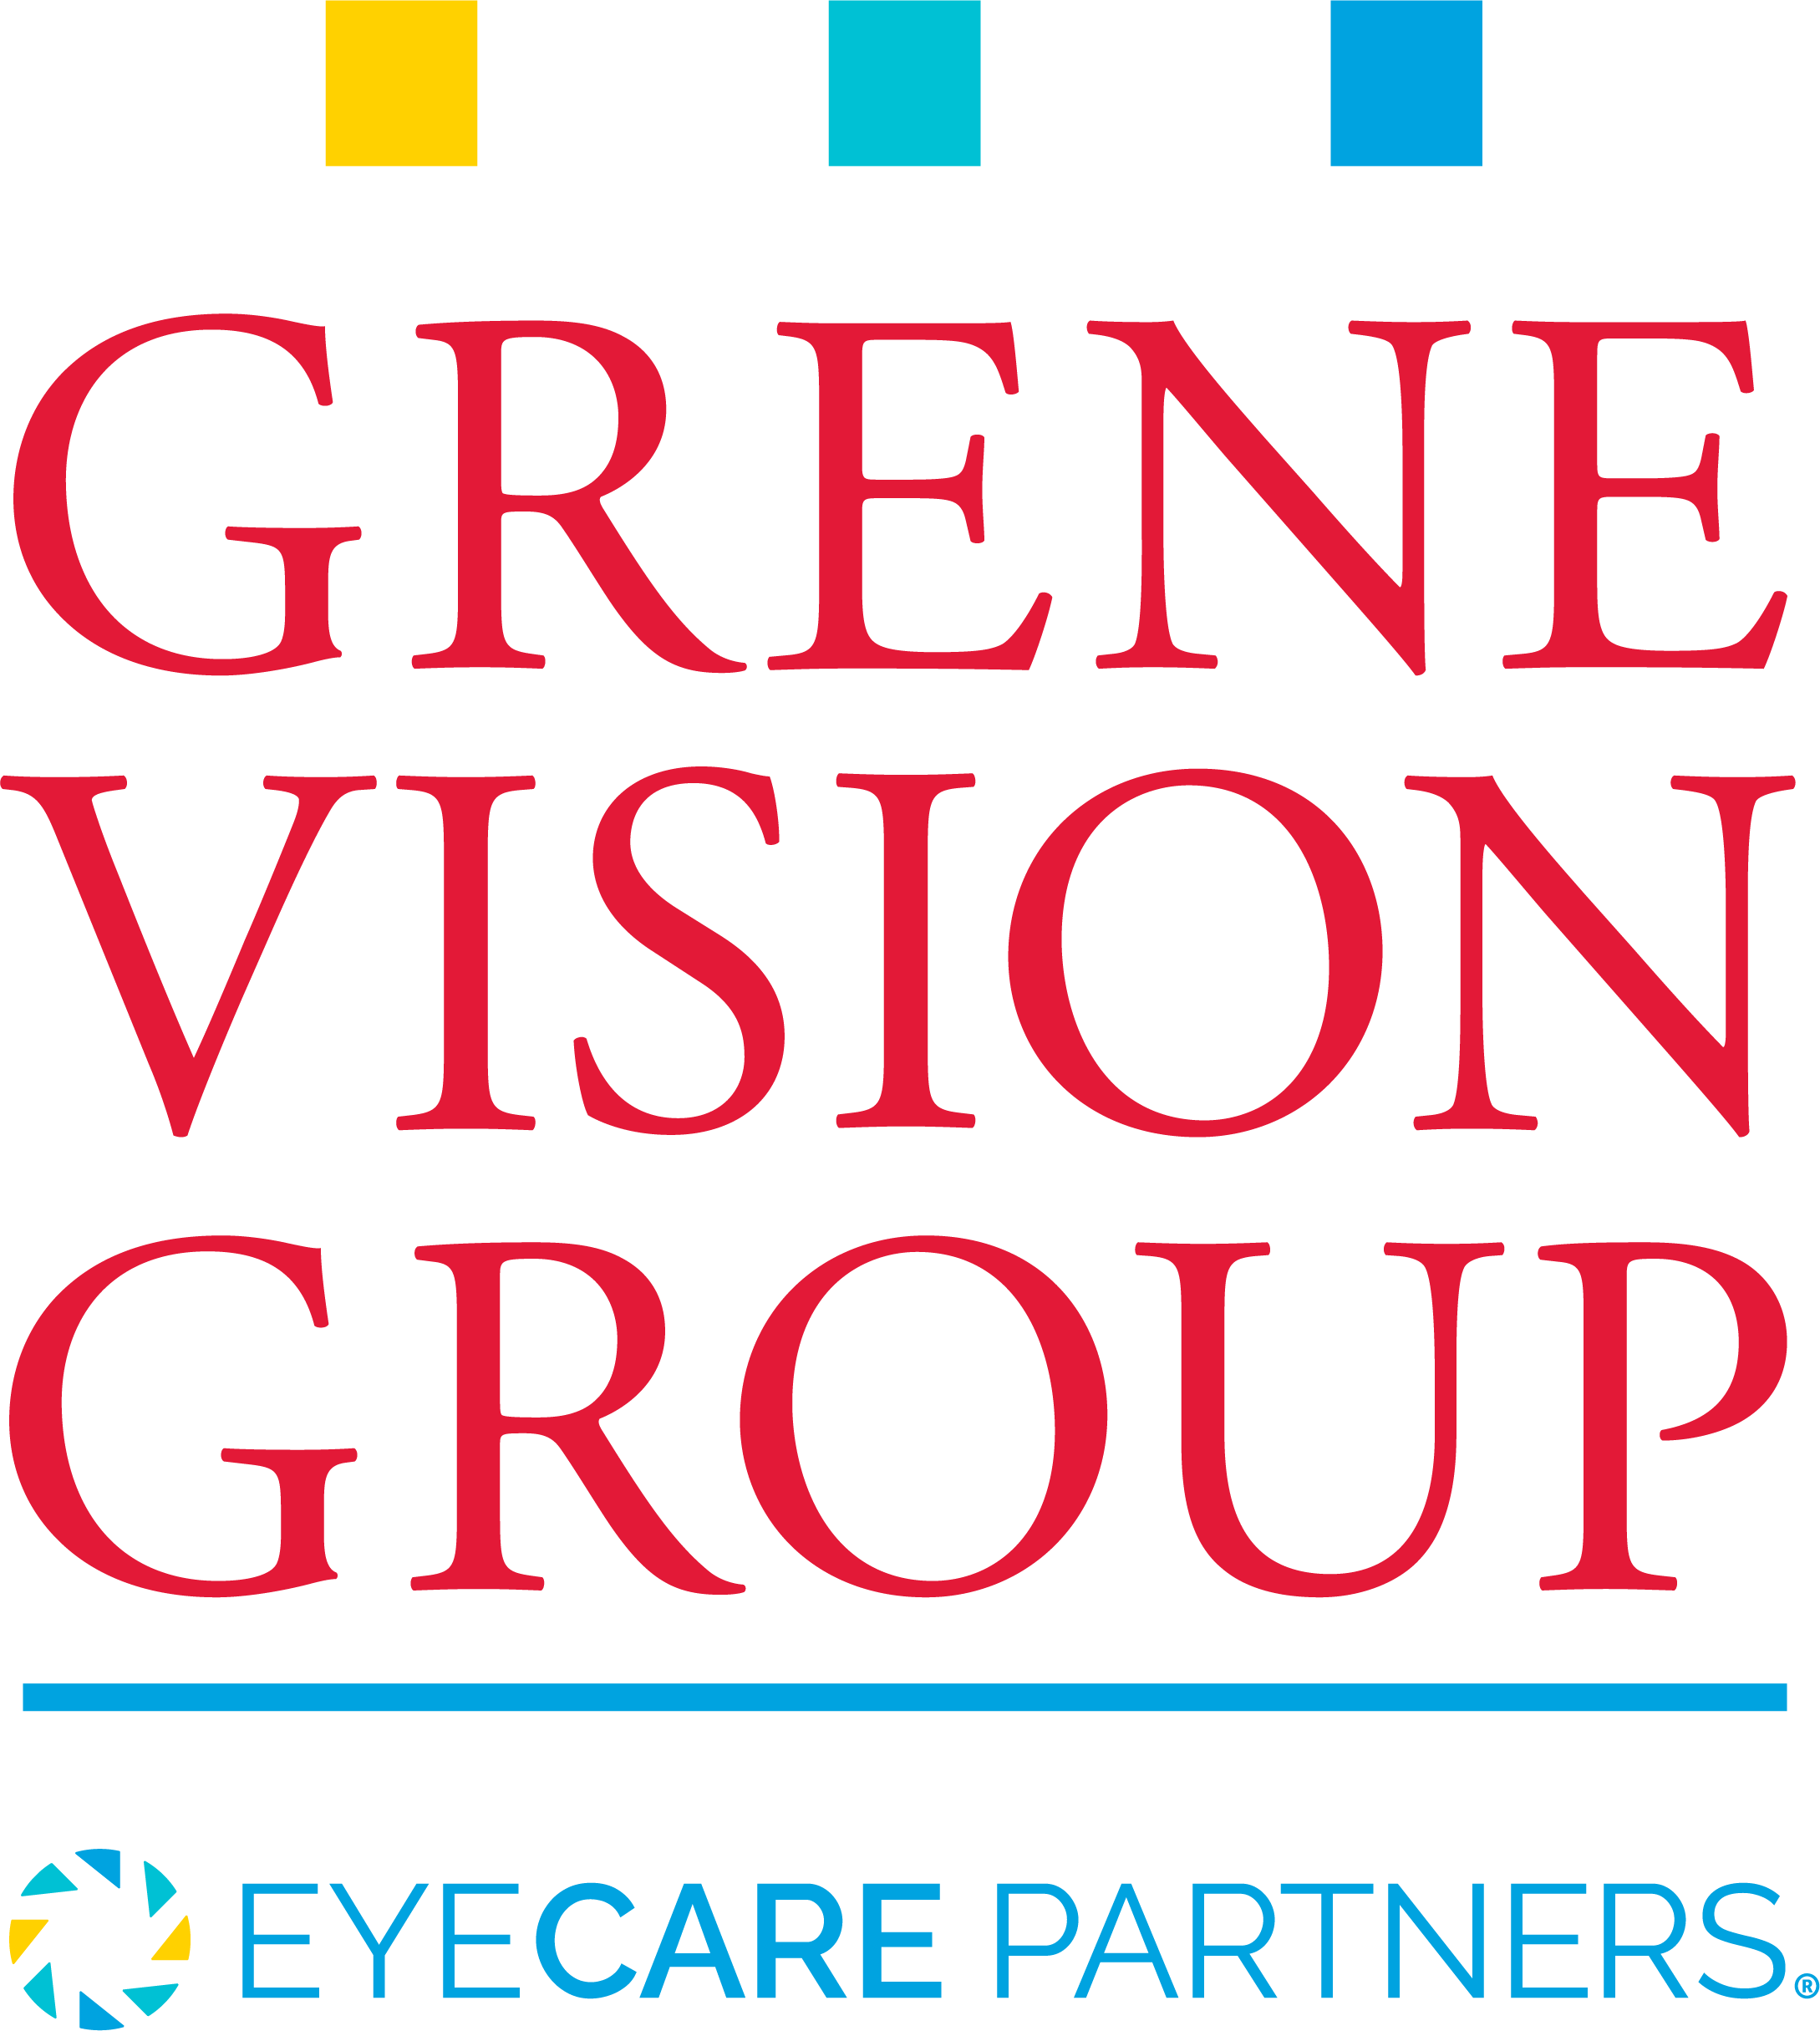 Grene Vision Group Logo